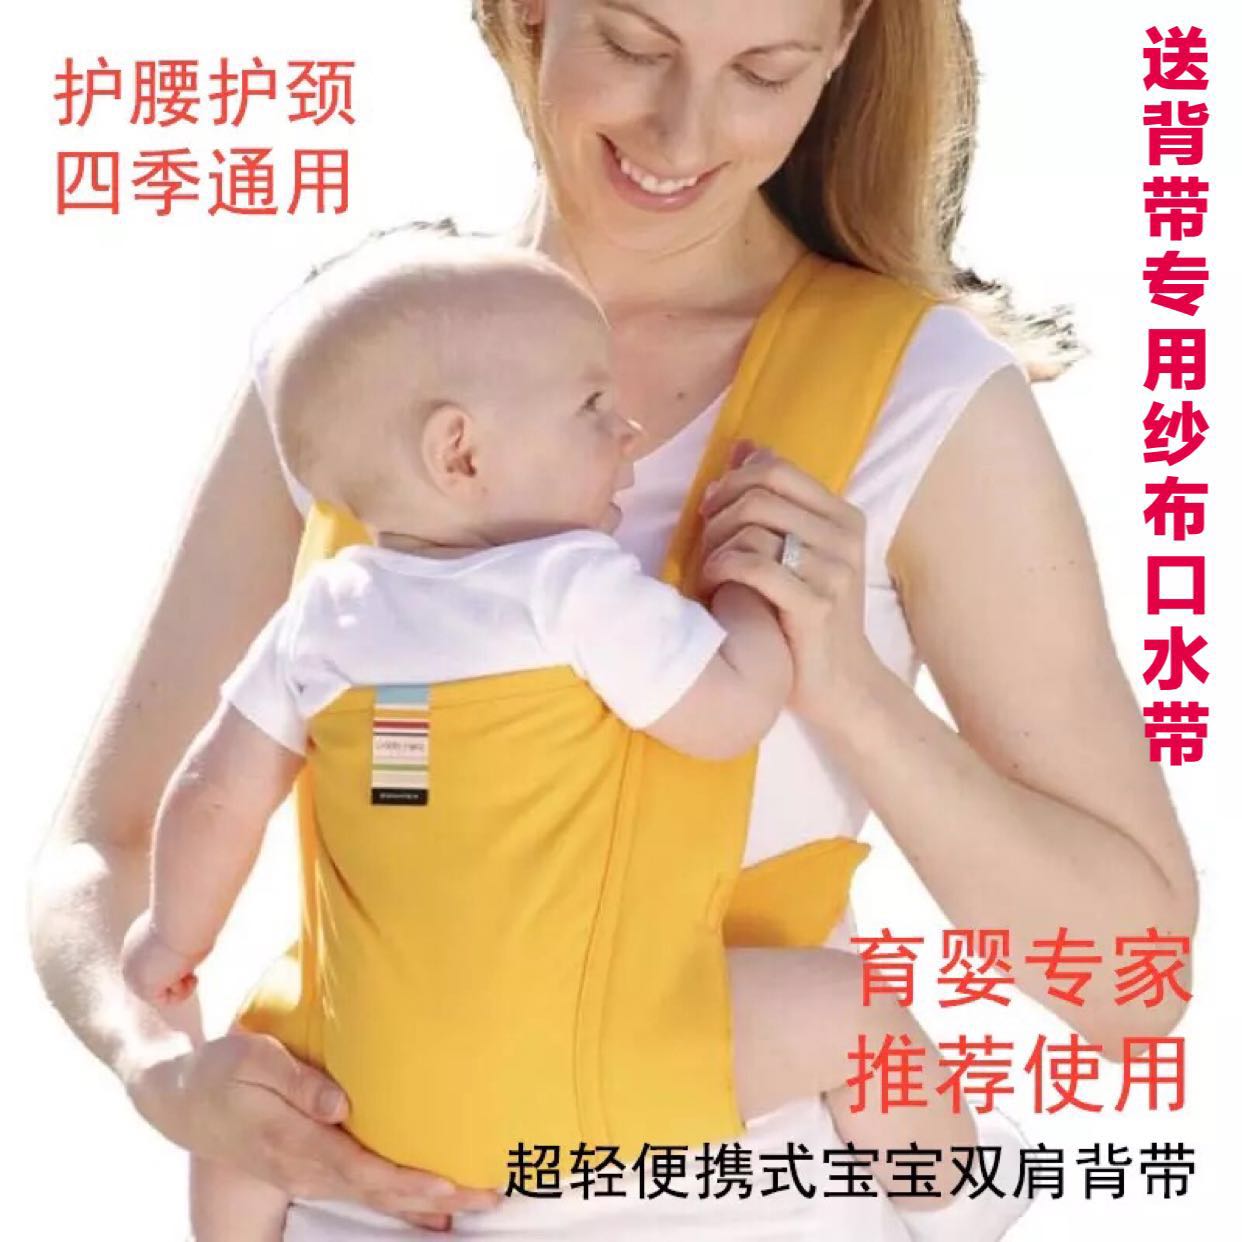 现货秒发麦麻日本制eightex夏季婴儿超轻便携式透气宝宝双肩背带